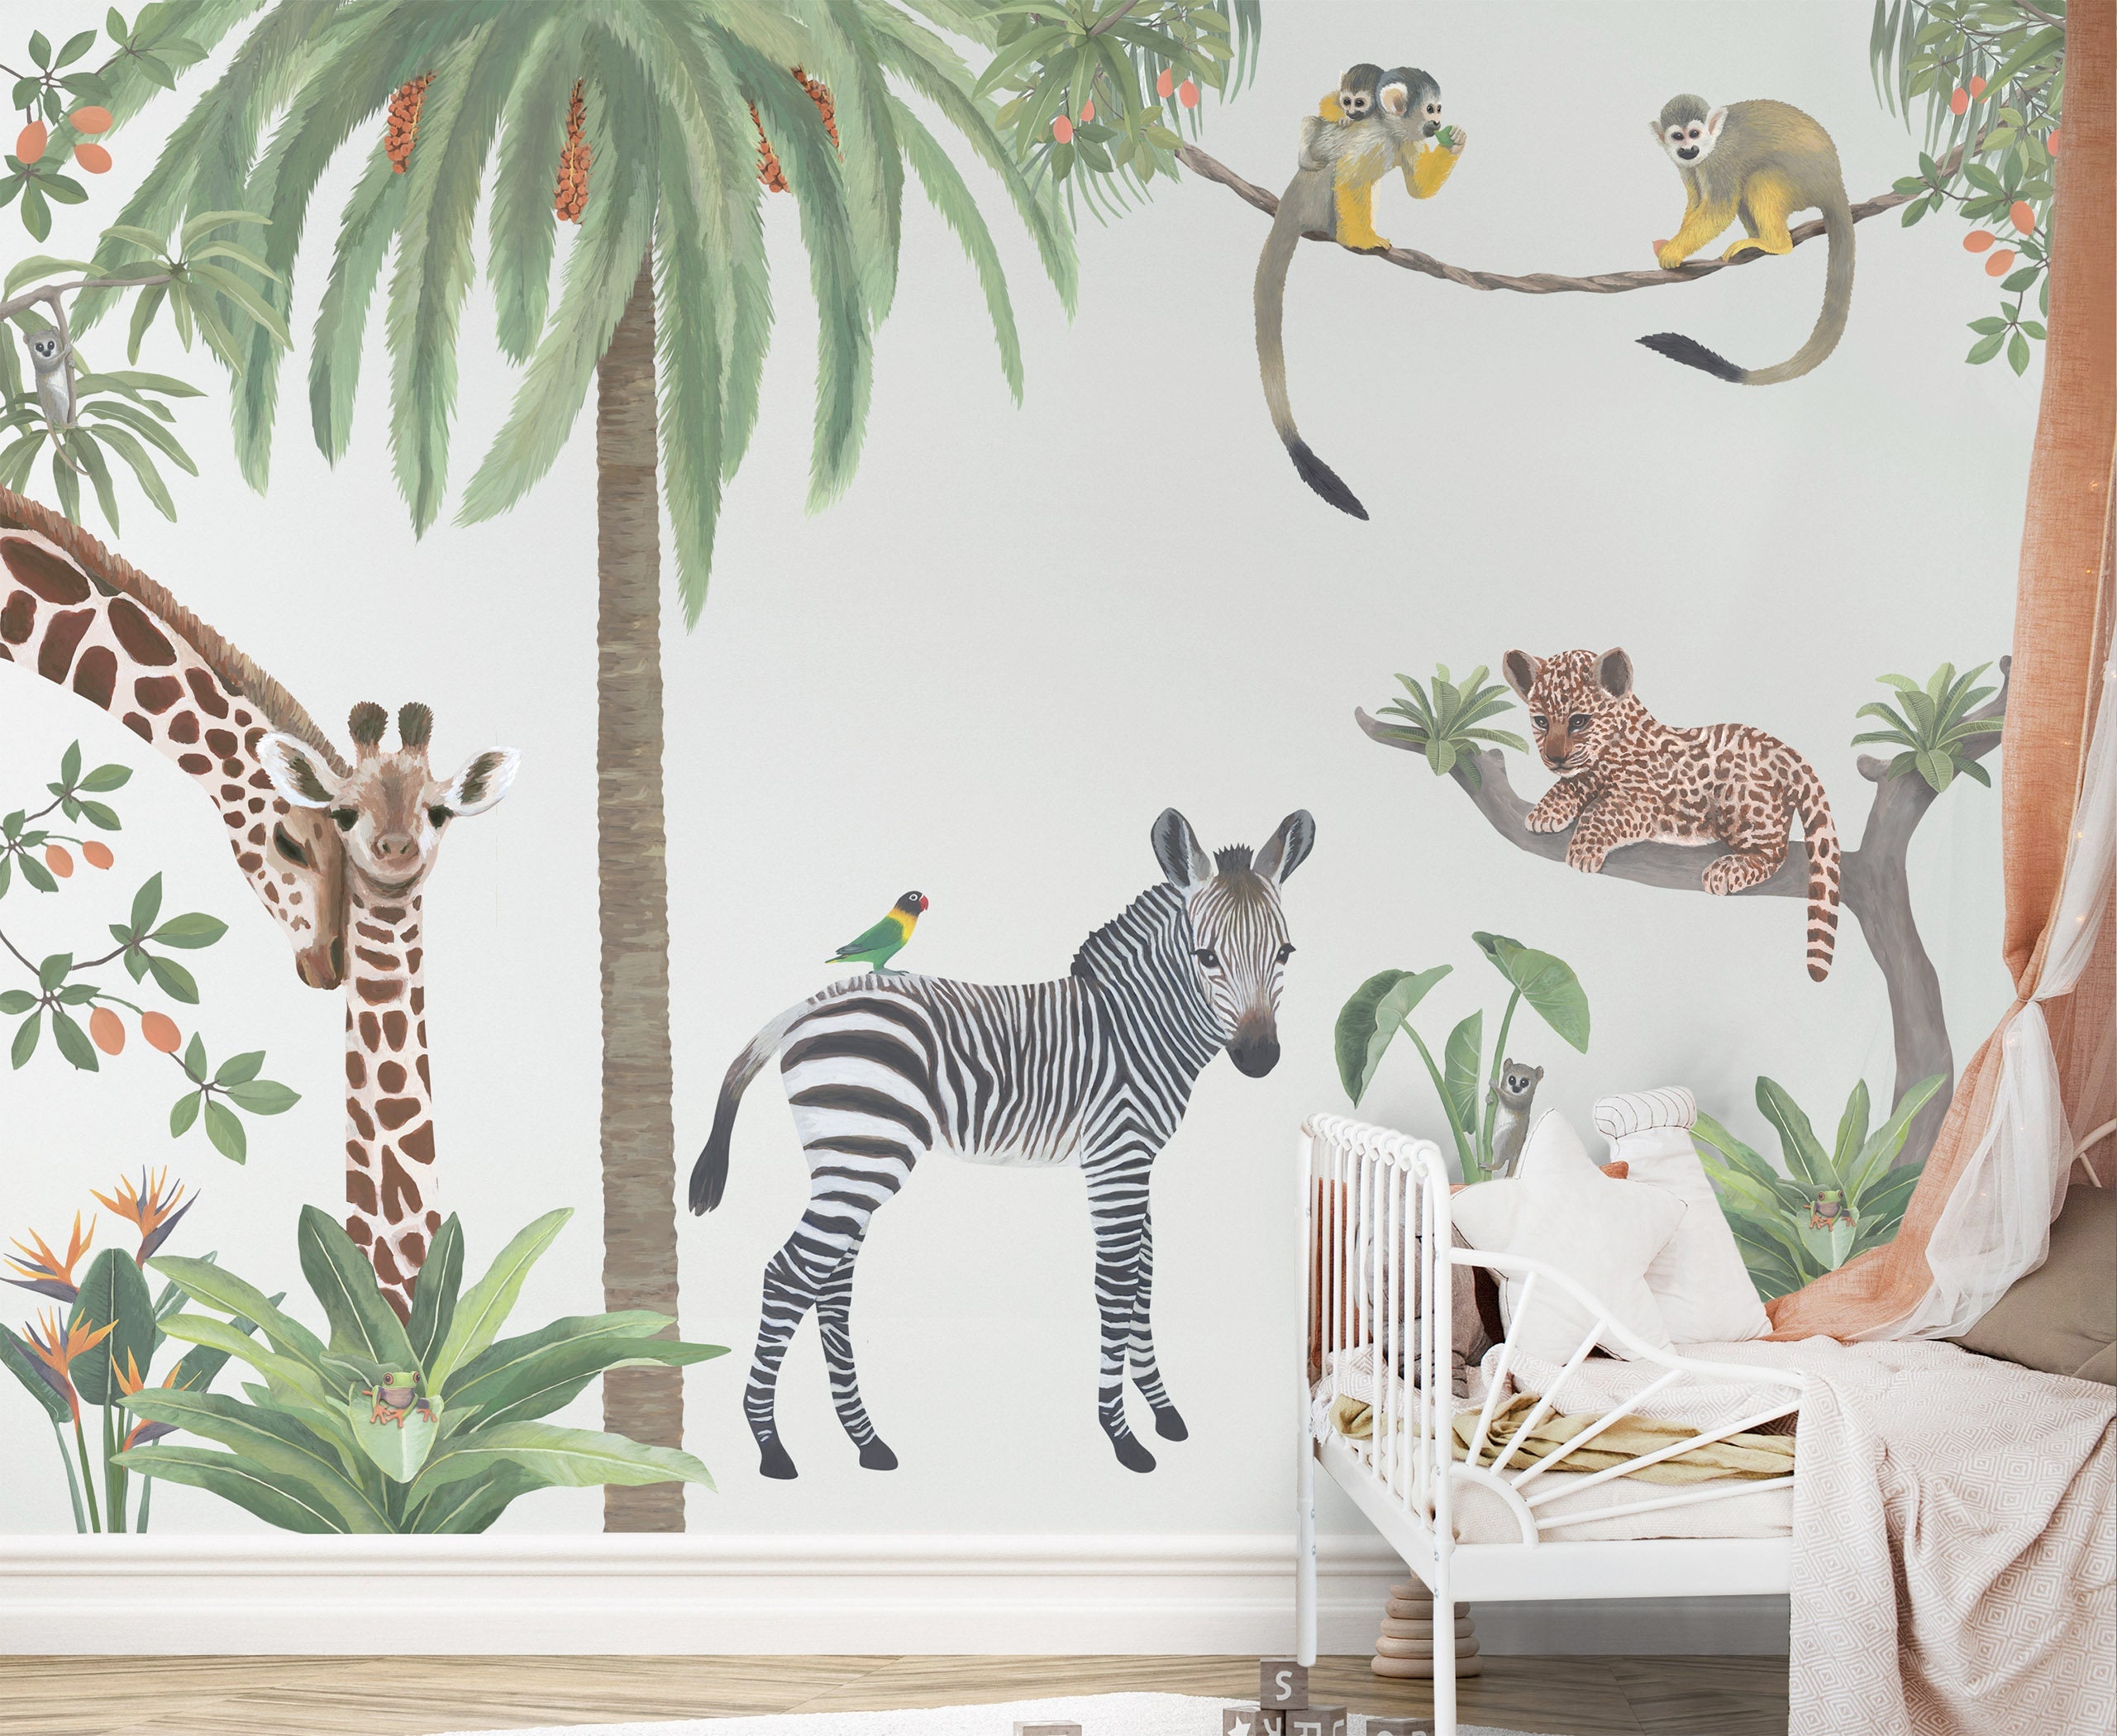 Jungle Wall Mural Kit  Wild Jungle Safari Stencil Kit – My Wonderful Walls